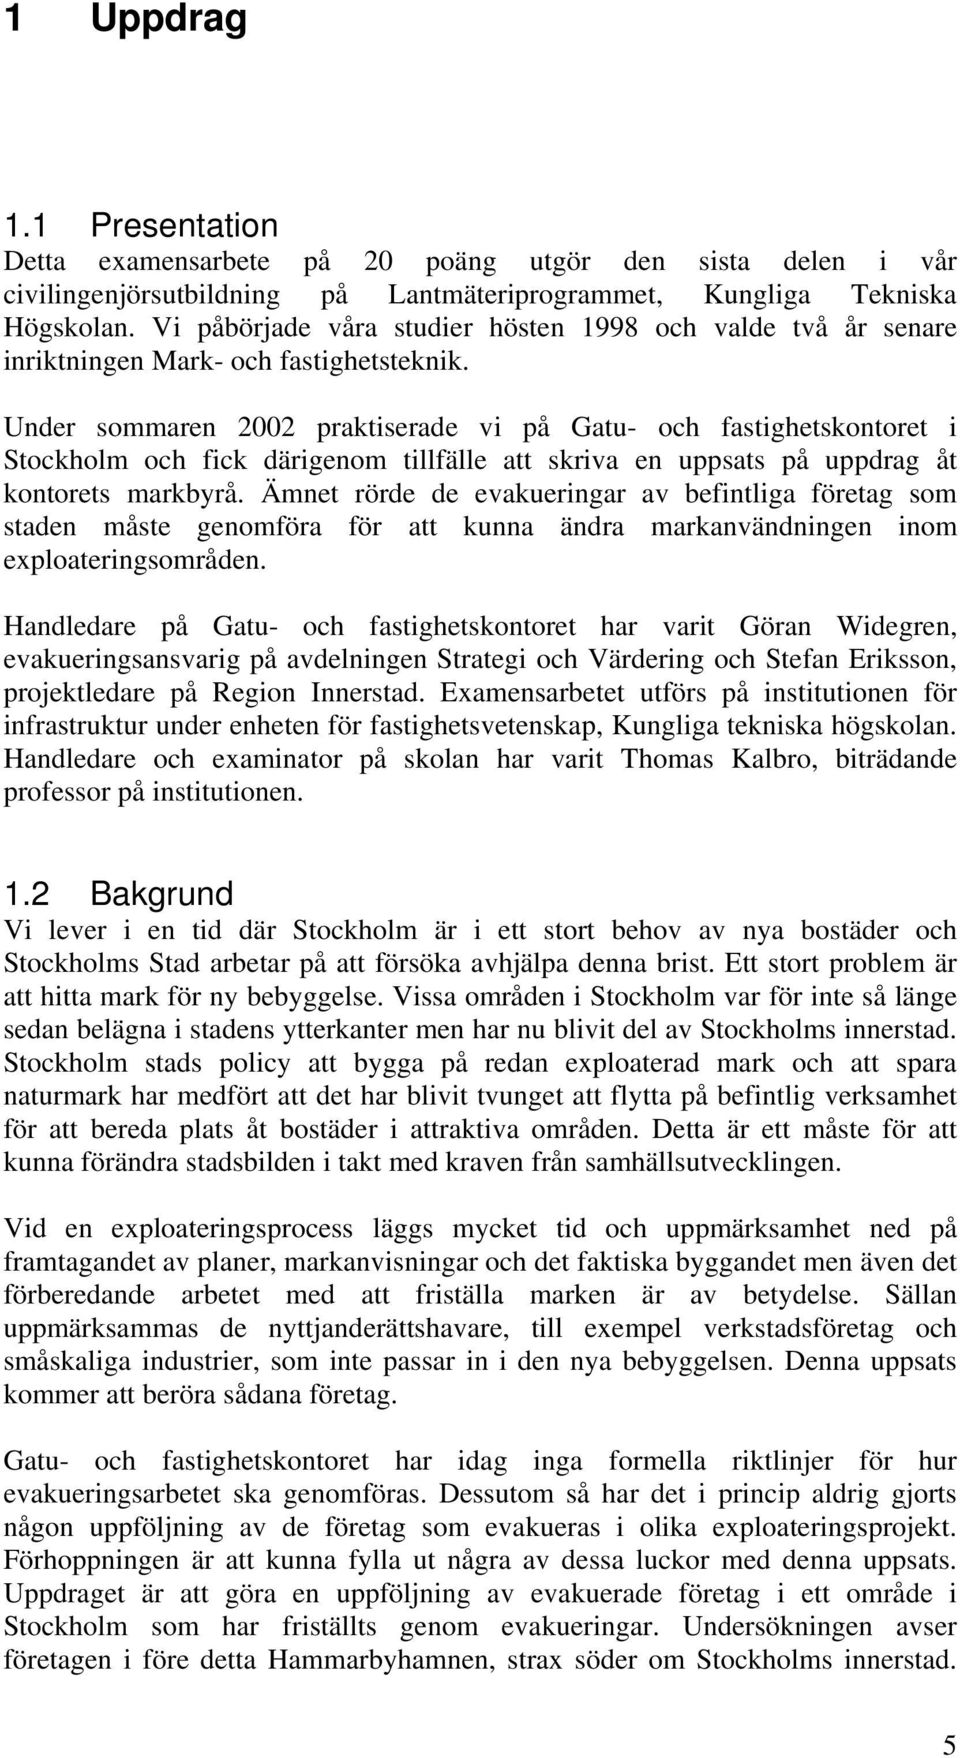 Under sommaren 2002 praktiserade vi på Gatu- och fastighetskontoret i Stockholm och fick därigenom tillfälle att skriva en uppsats på uppdrag åt kontorets markbyrå.